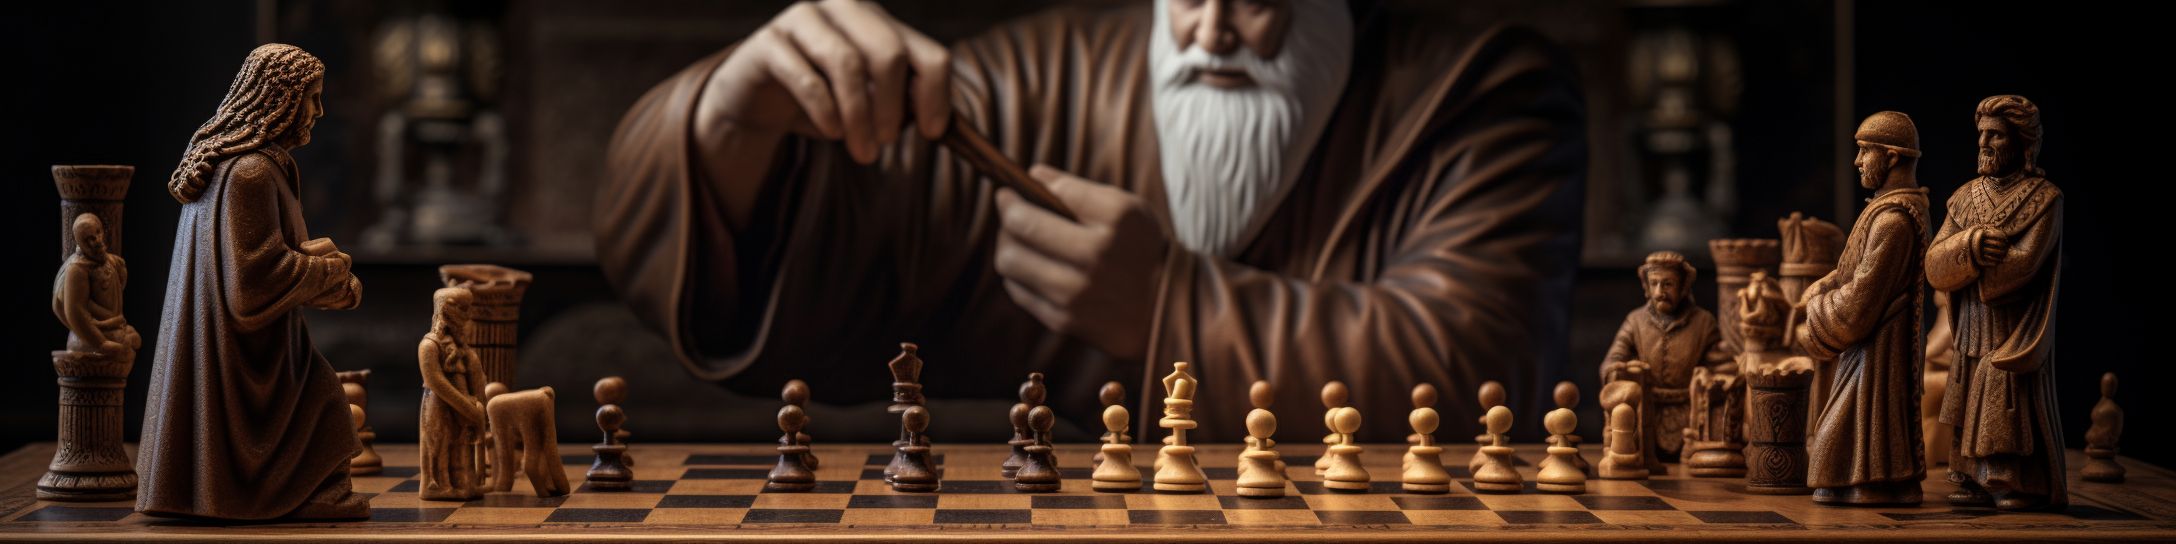 Le parcours historique du titre de Grand Maître aux échecs